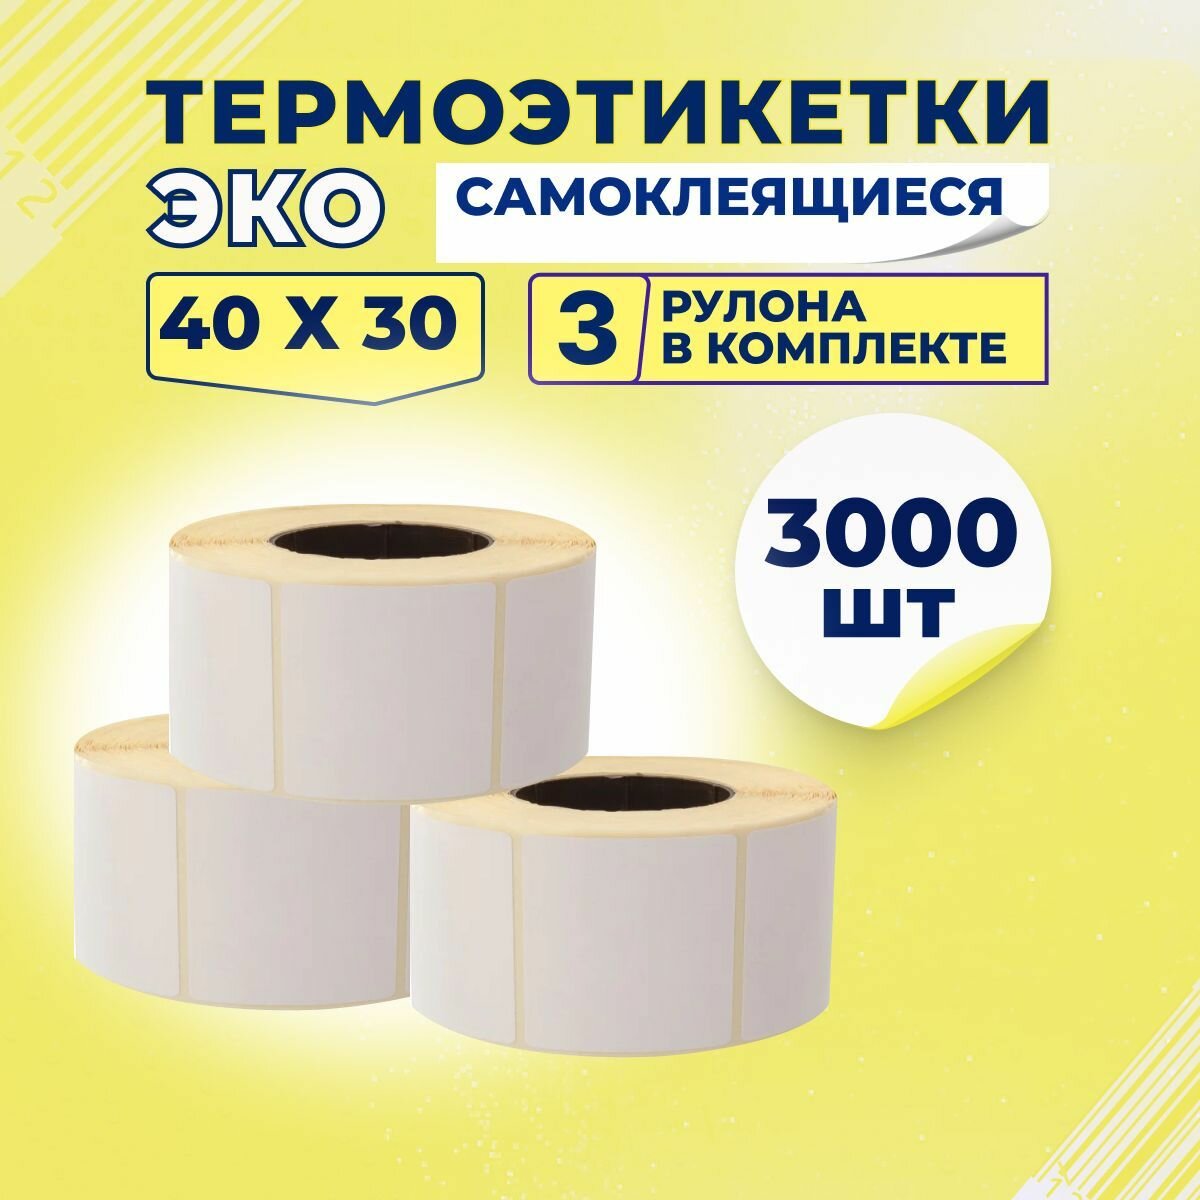 Термоэтикетки ЭКО 40х30 мм самоклеящиеся, 1000 наклеек в 1 ролике, (упаковка 3 ролика), втулка 40 мм